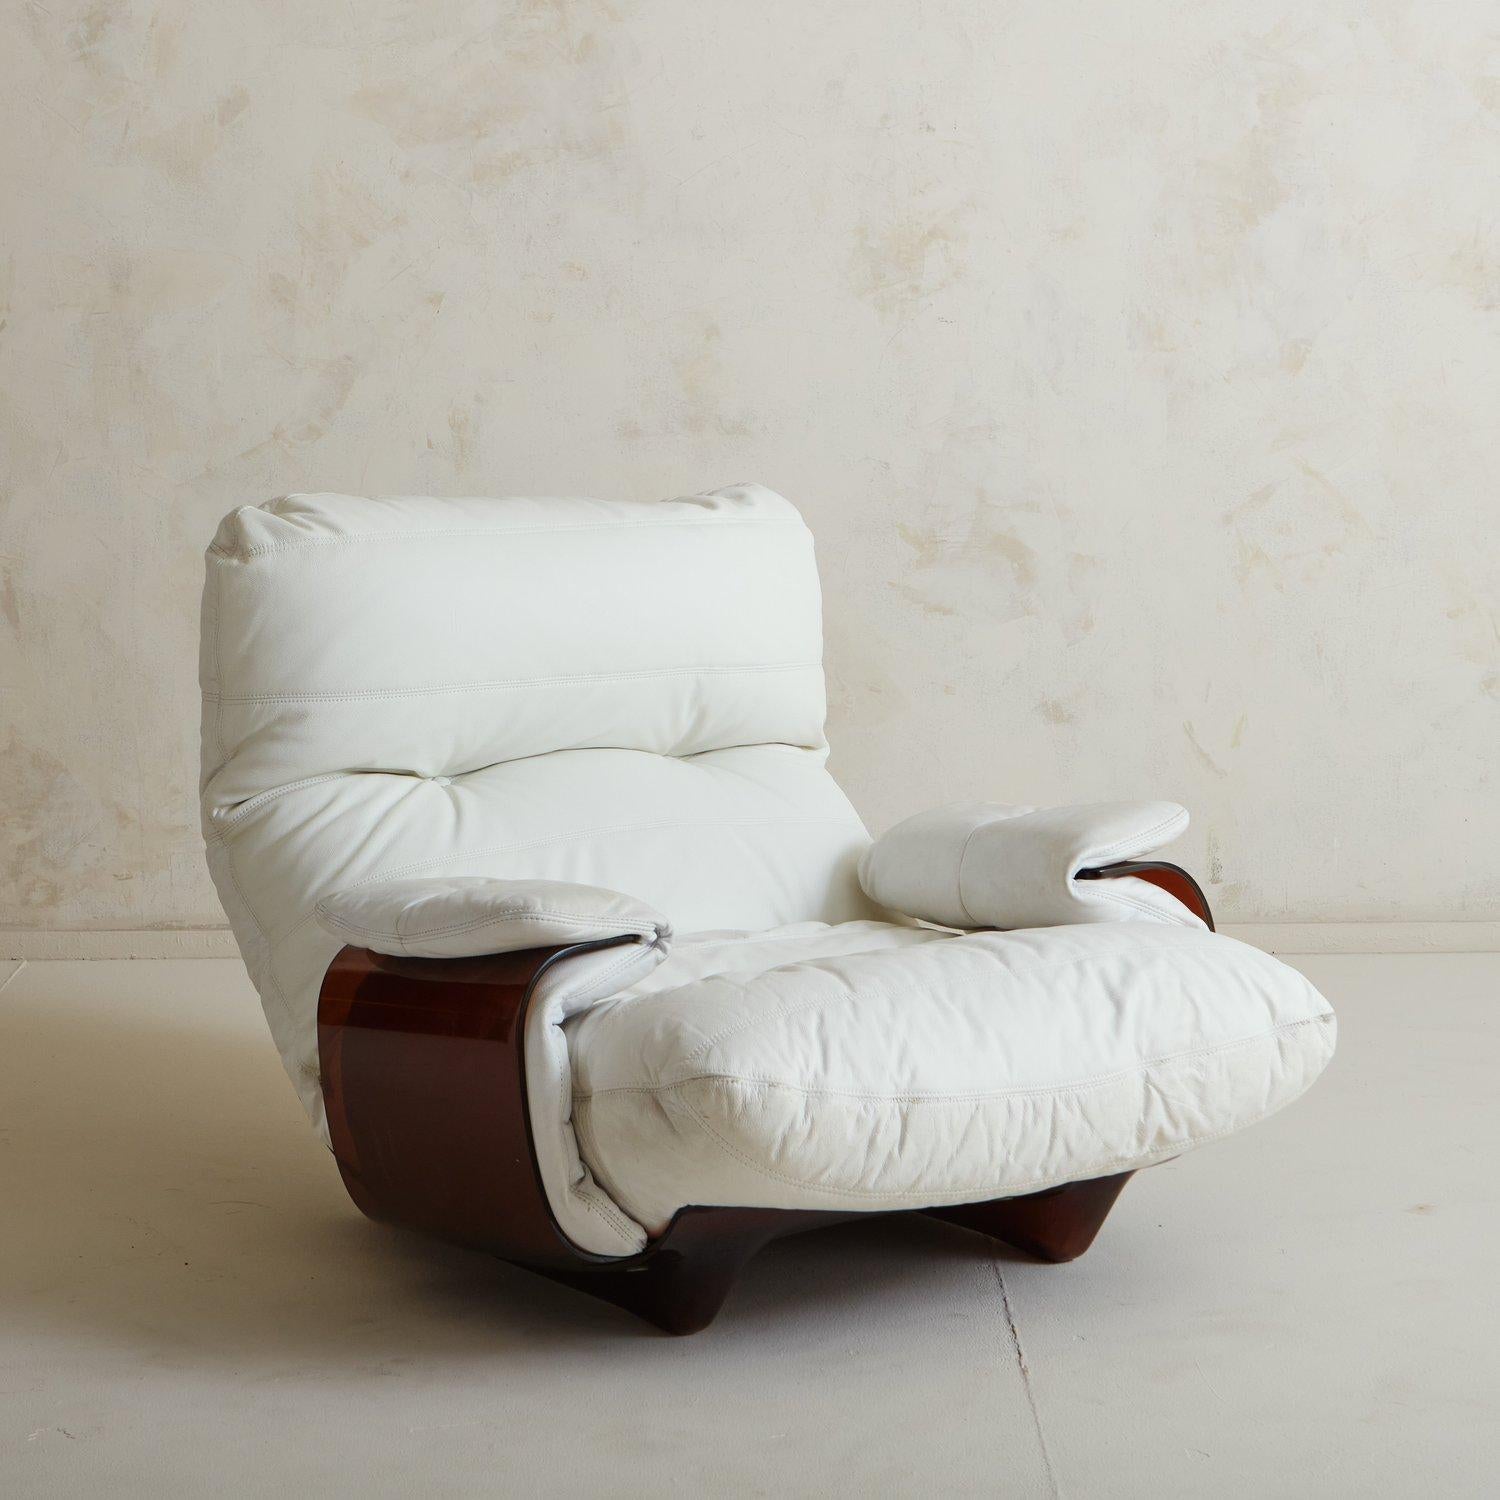 Der von Michel Ducaroy für Lignet Roset entworfene Stuhl Marsala hat einen skulpturalen Rahmen aus bernsteinfarbenem Plexiglas, der vollständig gebogen ist. Dieser Marsala-Stuhl hat eine wunderschöne weiße Lederpolsterung. Behält das originale Label